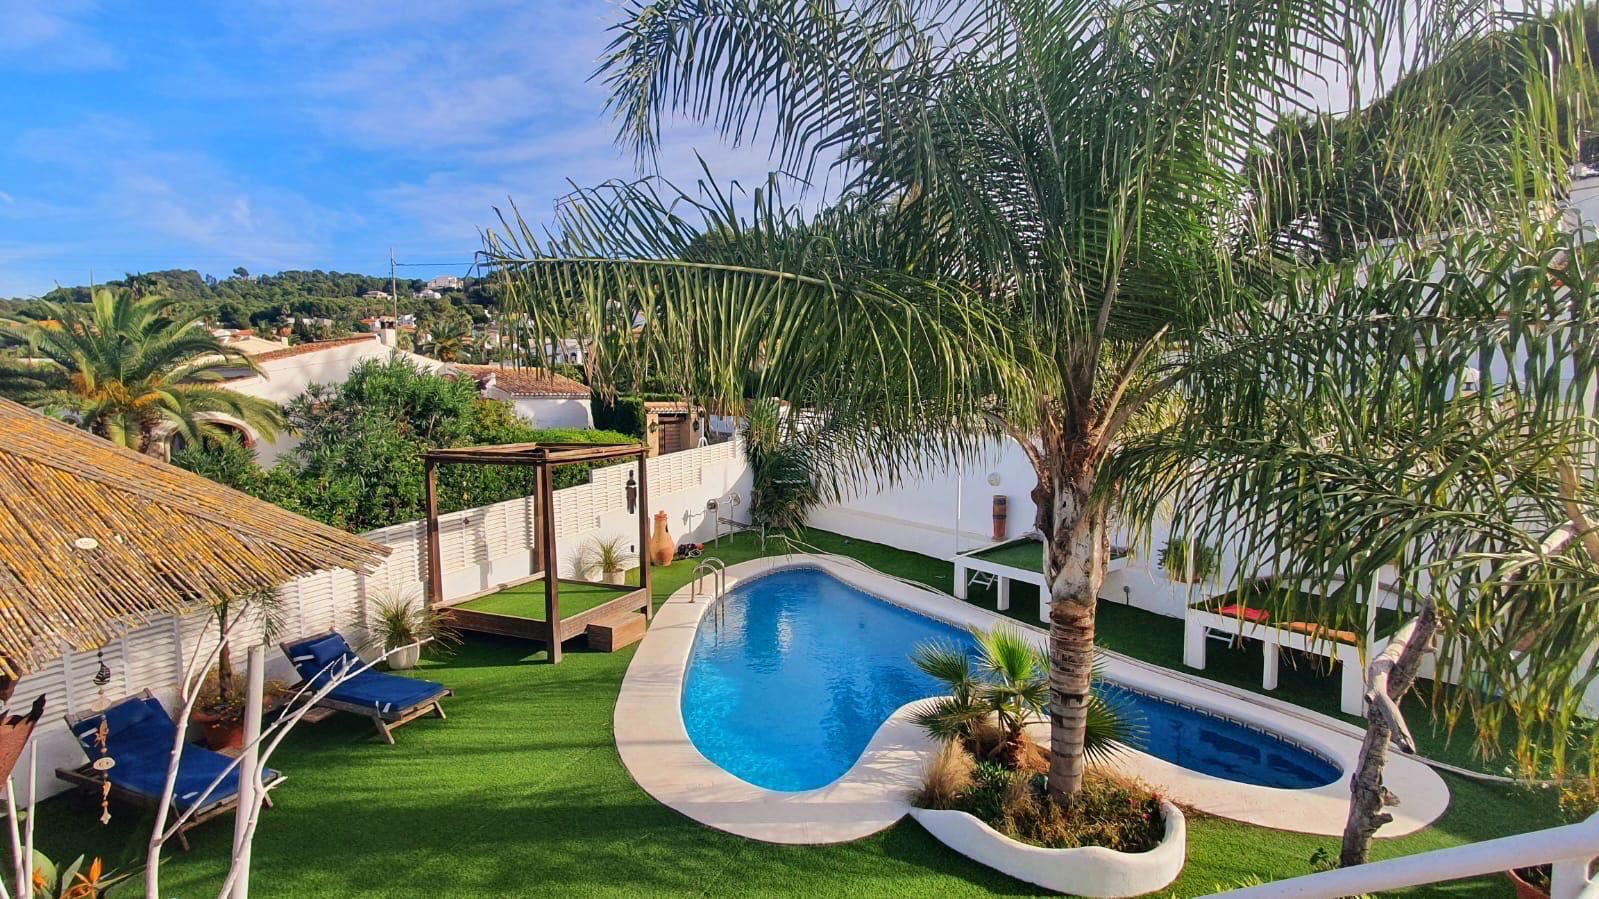 En venta villa con encanto en Jávea, con piscina, zona de barbacoa, garaje y a 1Km de la playa del Arenal.